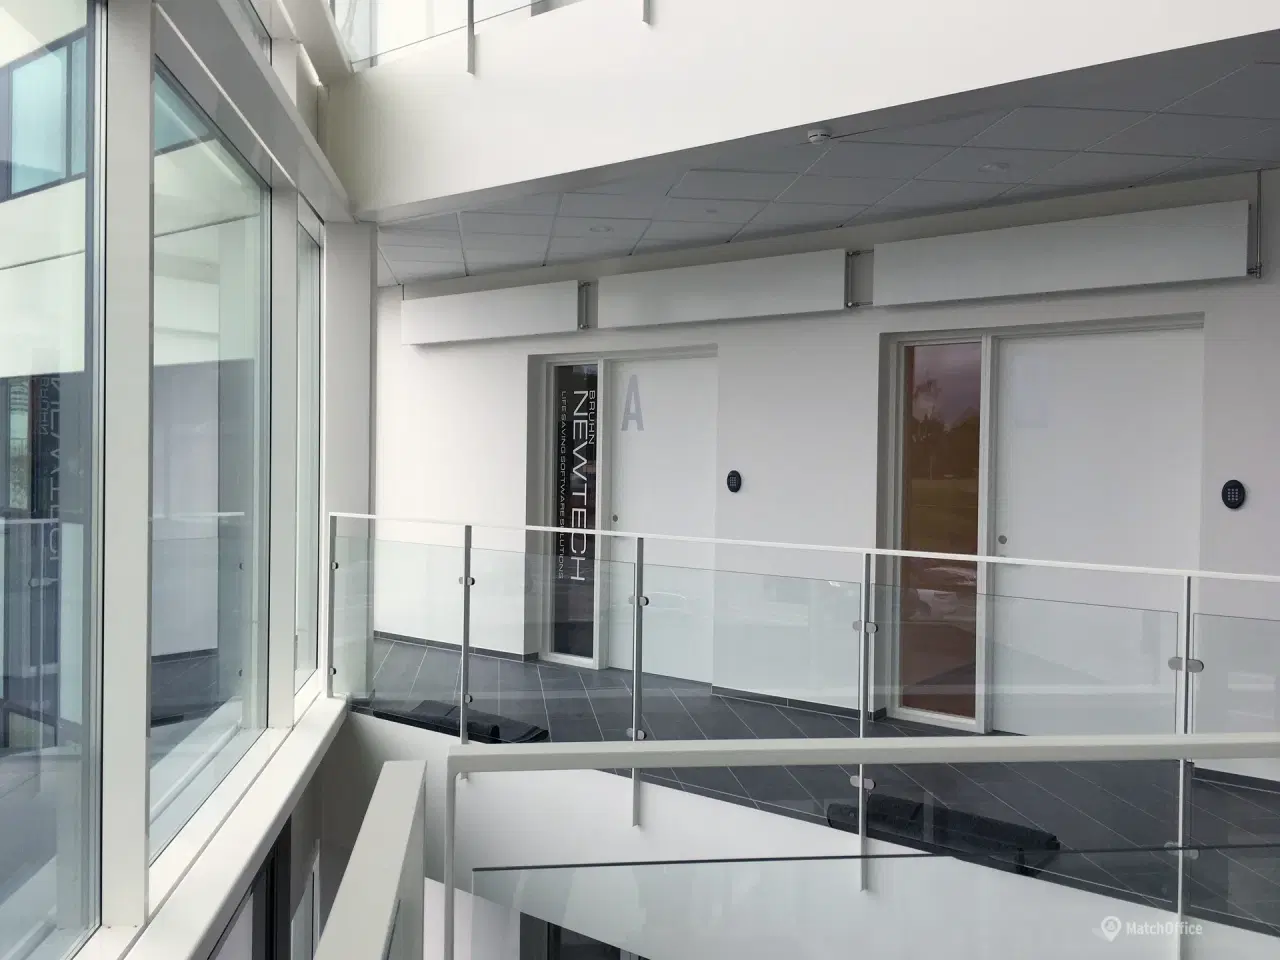 Billede 2 - Lejemålet i kontorfællesskabet er beliggende på 1. sal, og har som det eneste i kontorfællesskabet egen indgangsdør.